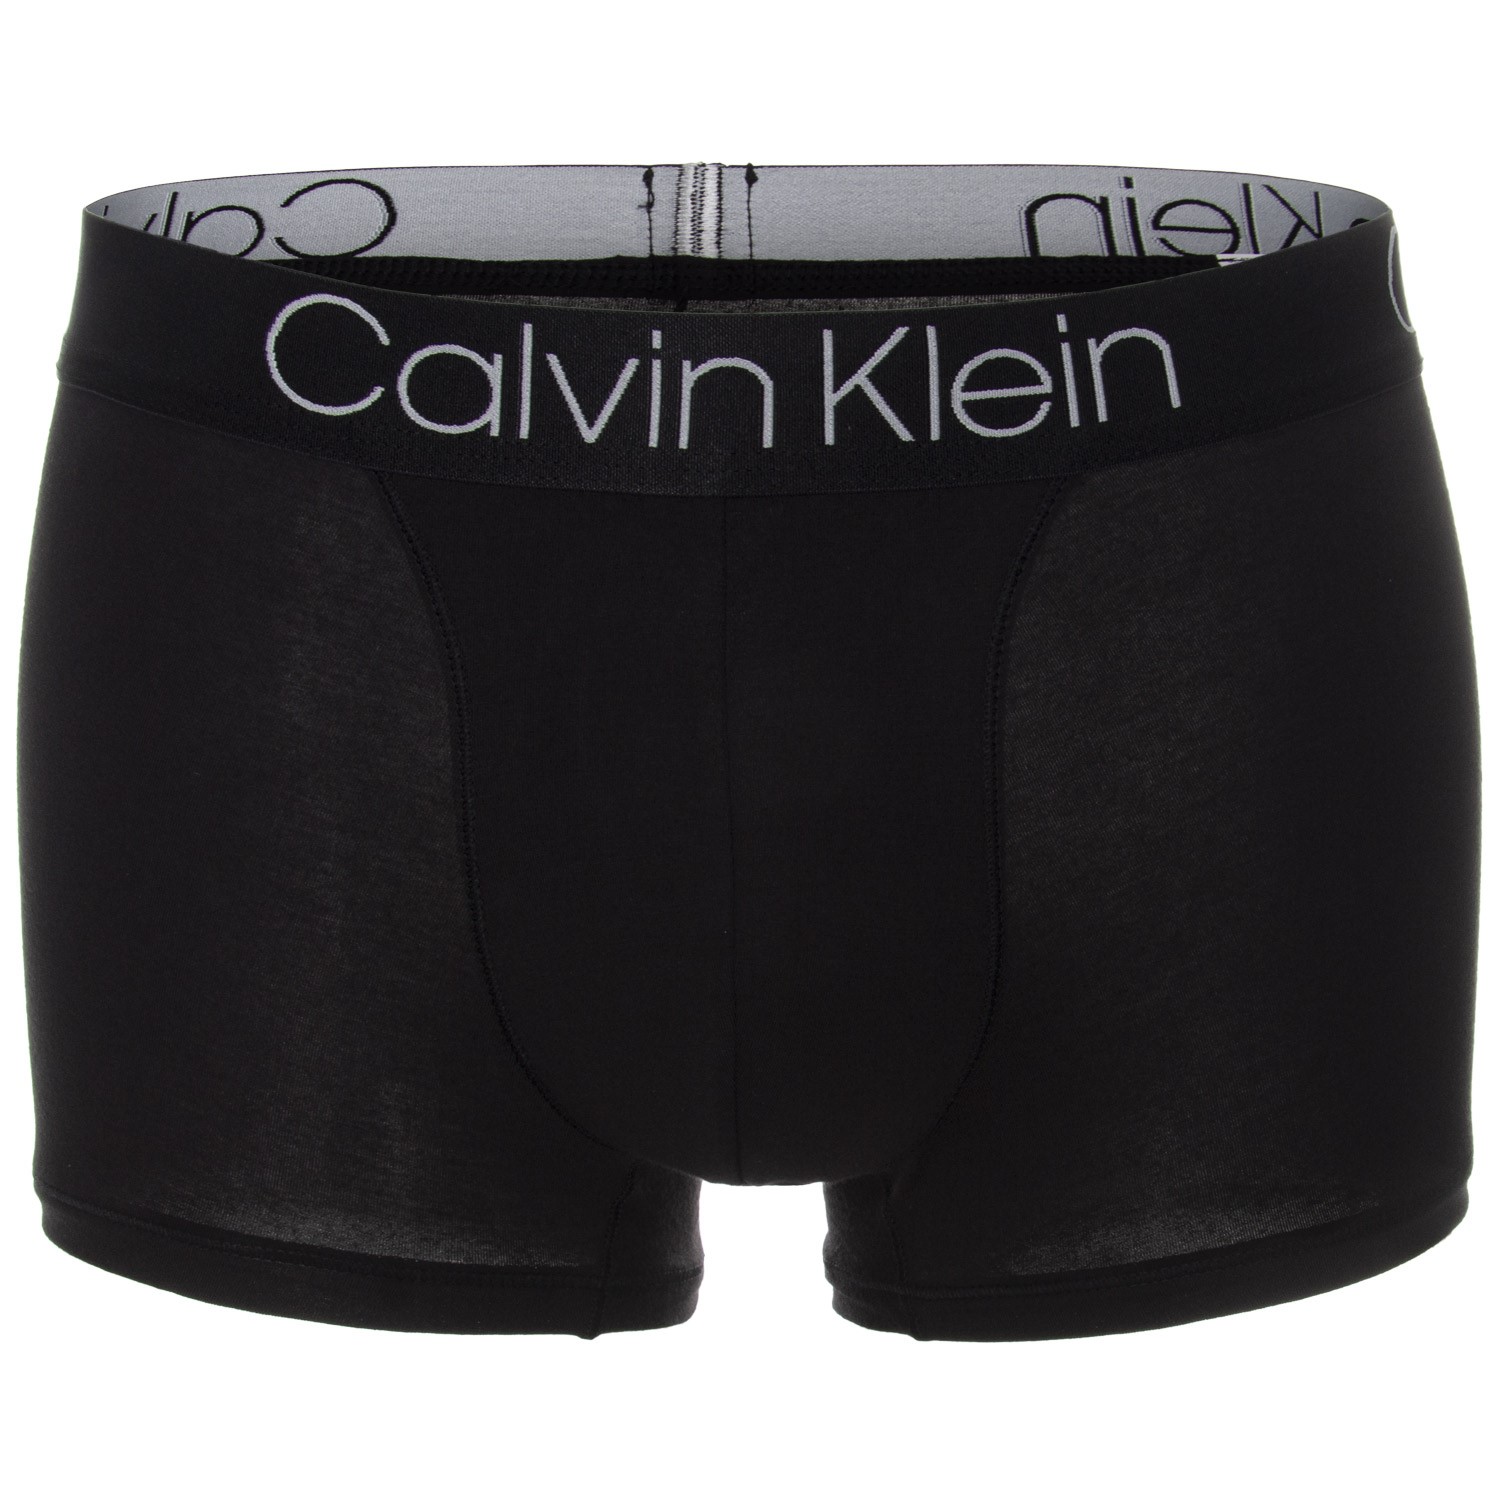 Calvin Klein Luxe Cotton Modal Trunk